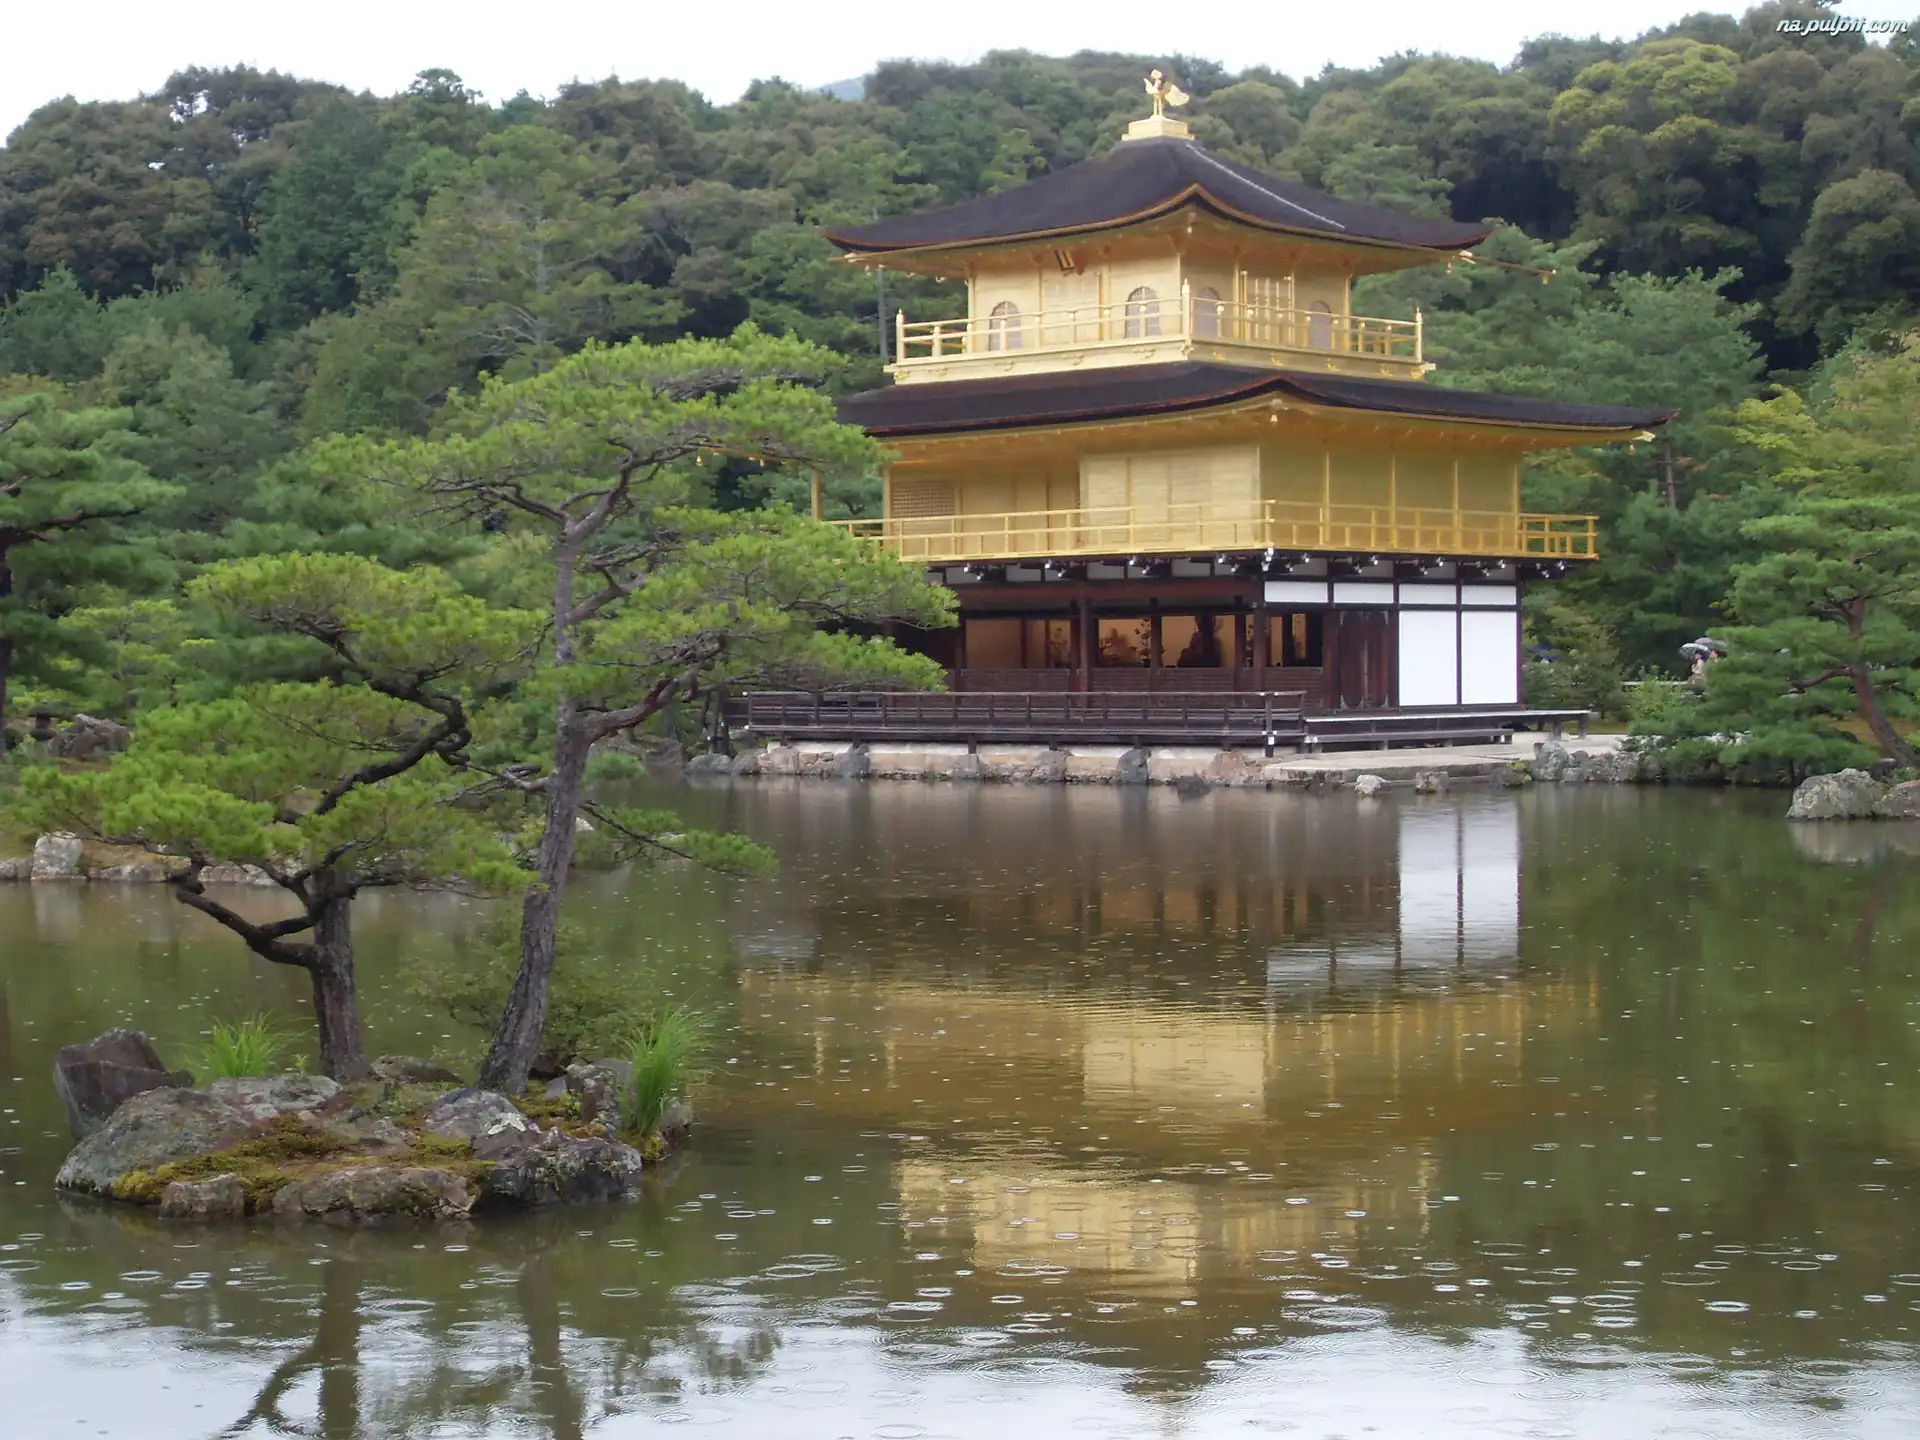 Złoty Pawilon, Kioto, Japonia, Staw Kyko chi, Świątynia Kinkakuji, Drzewa